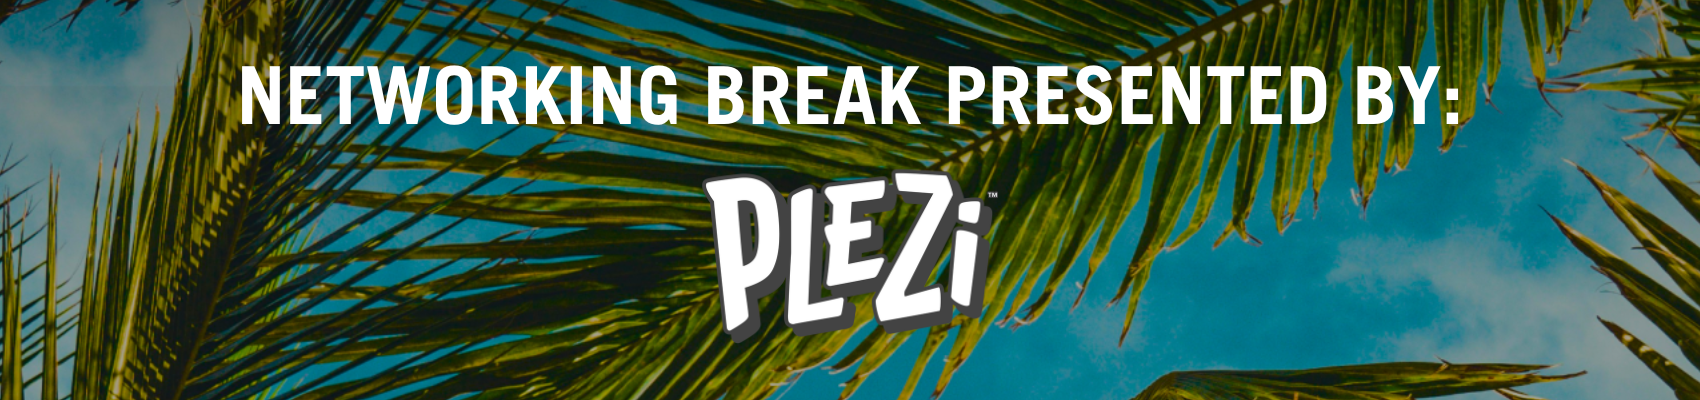 Networking Break Presented By: Plezi